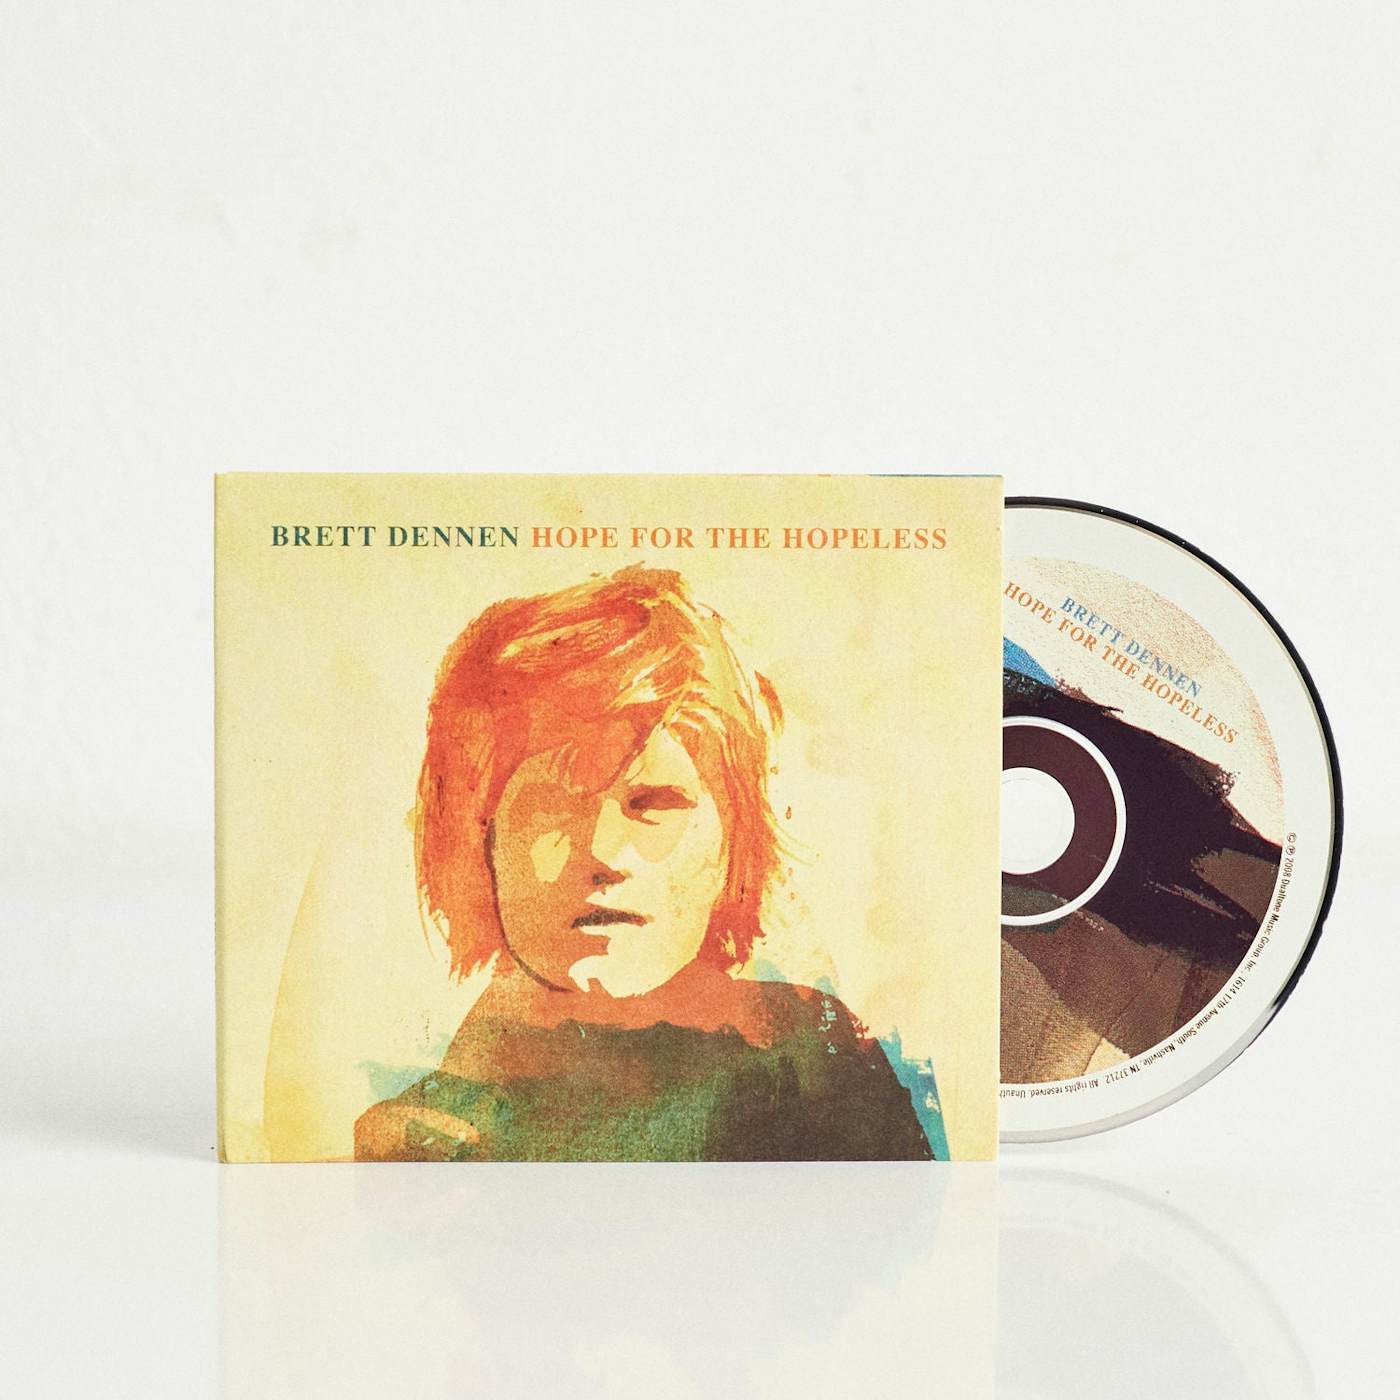 Brett Dennen Hope for the Hopeless (CD)